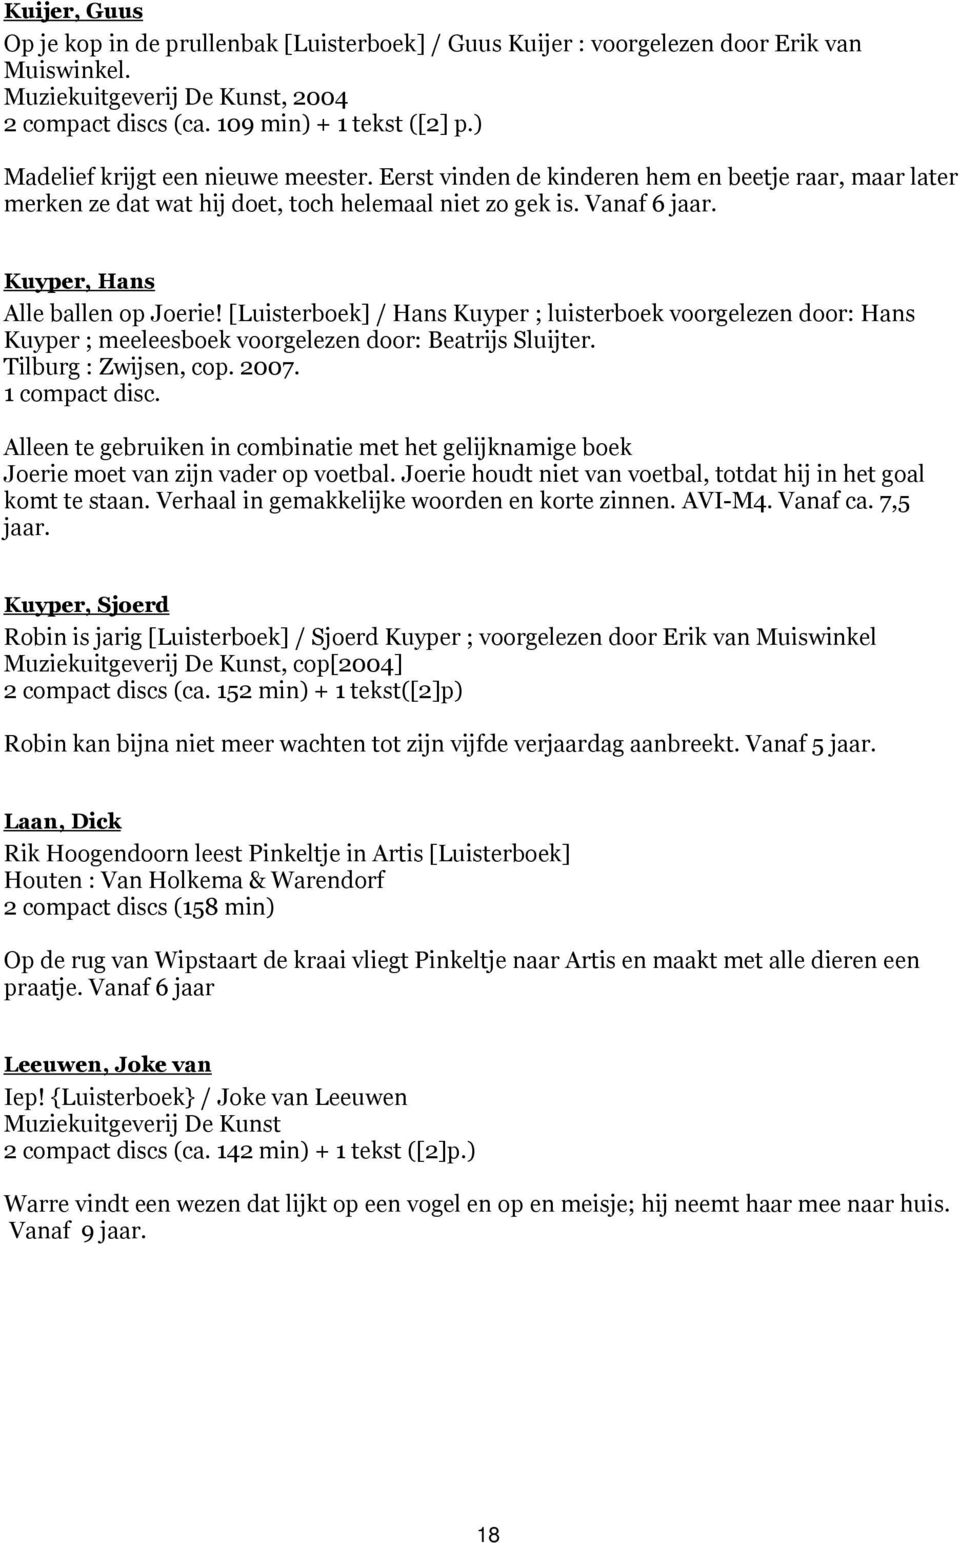 Kuyper, Hans Alle ballen op Joerie! [Luisterboek] / Hans Kuyper ; luisterboek voorgelezen door: Hans Kuyper ; meeleesboek voorgelezen door: Beatrijs Sluijter. Tilburg : Zwijsen, cop. 2007.